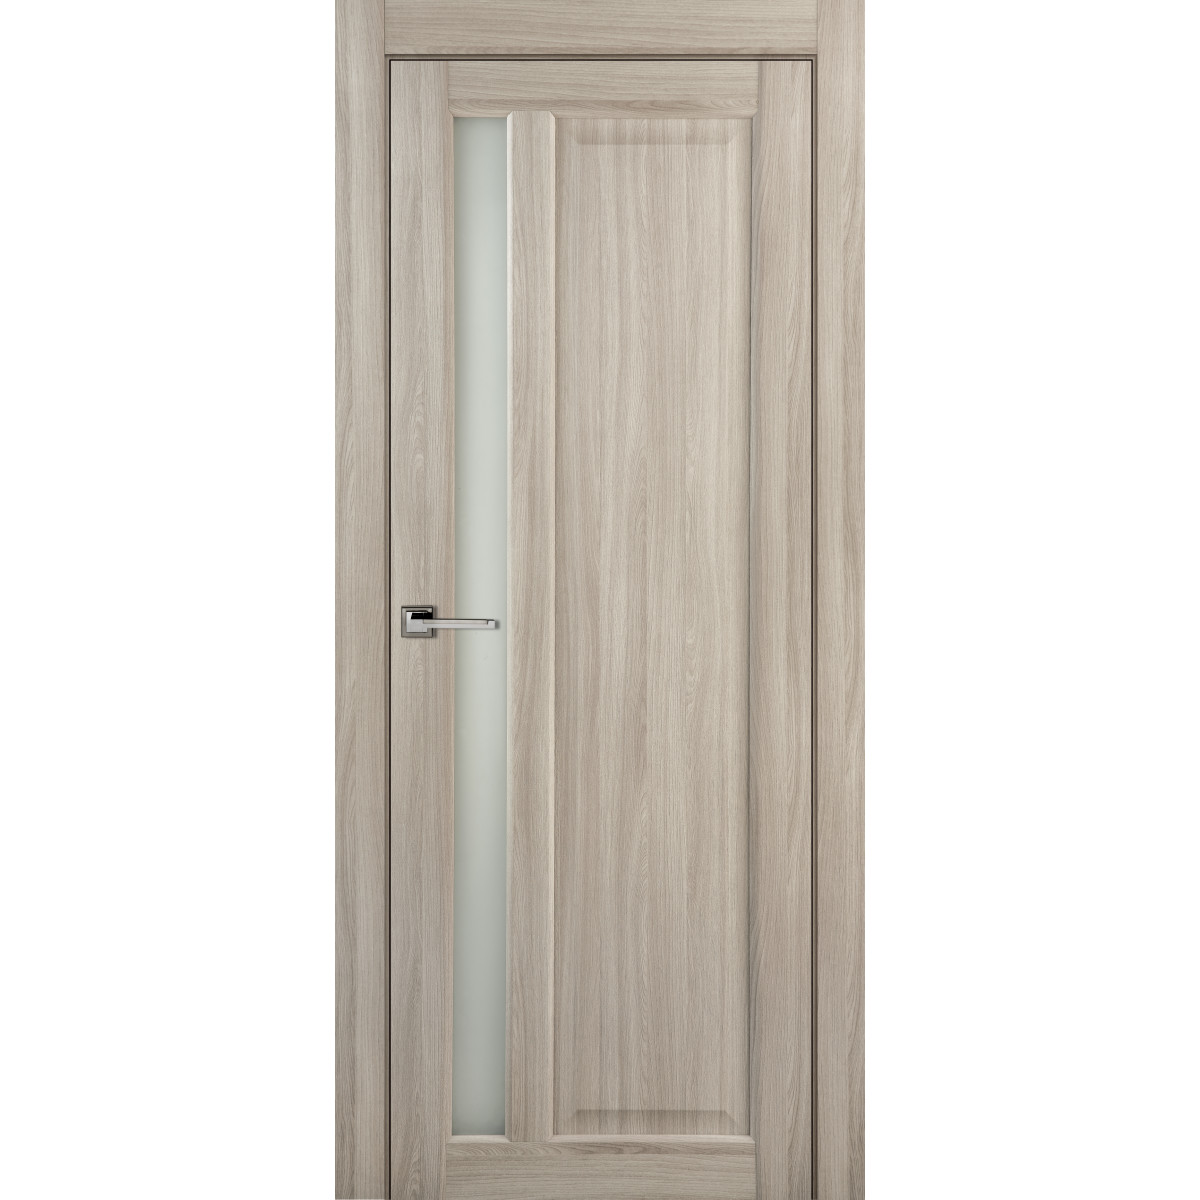 Дверь межкомнатная остеклённая Artens Мария 70x200 см, ПВХ, цвет шимо, с замком в комплекте